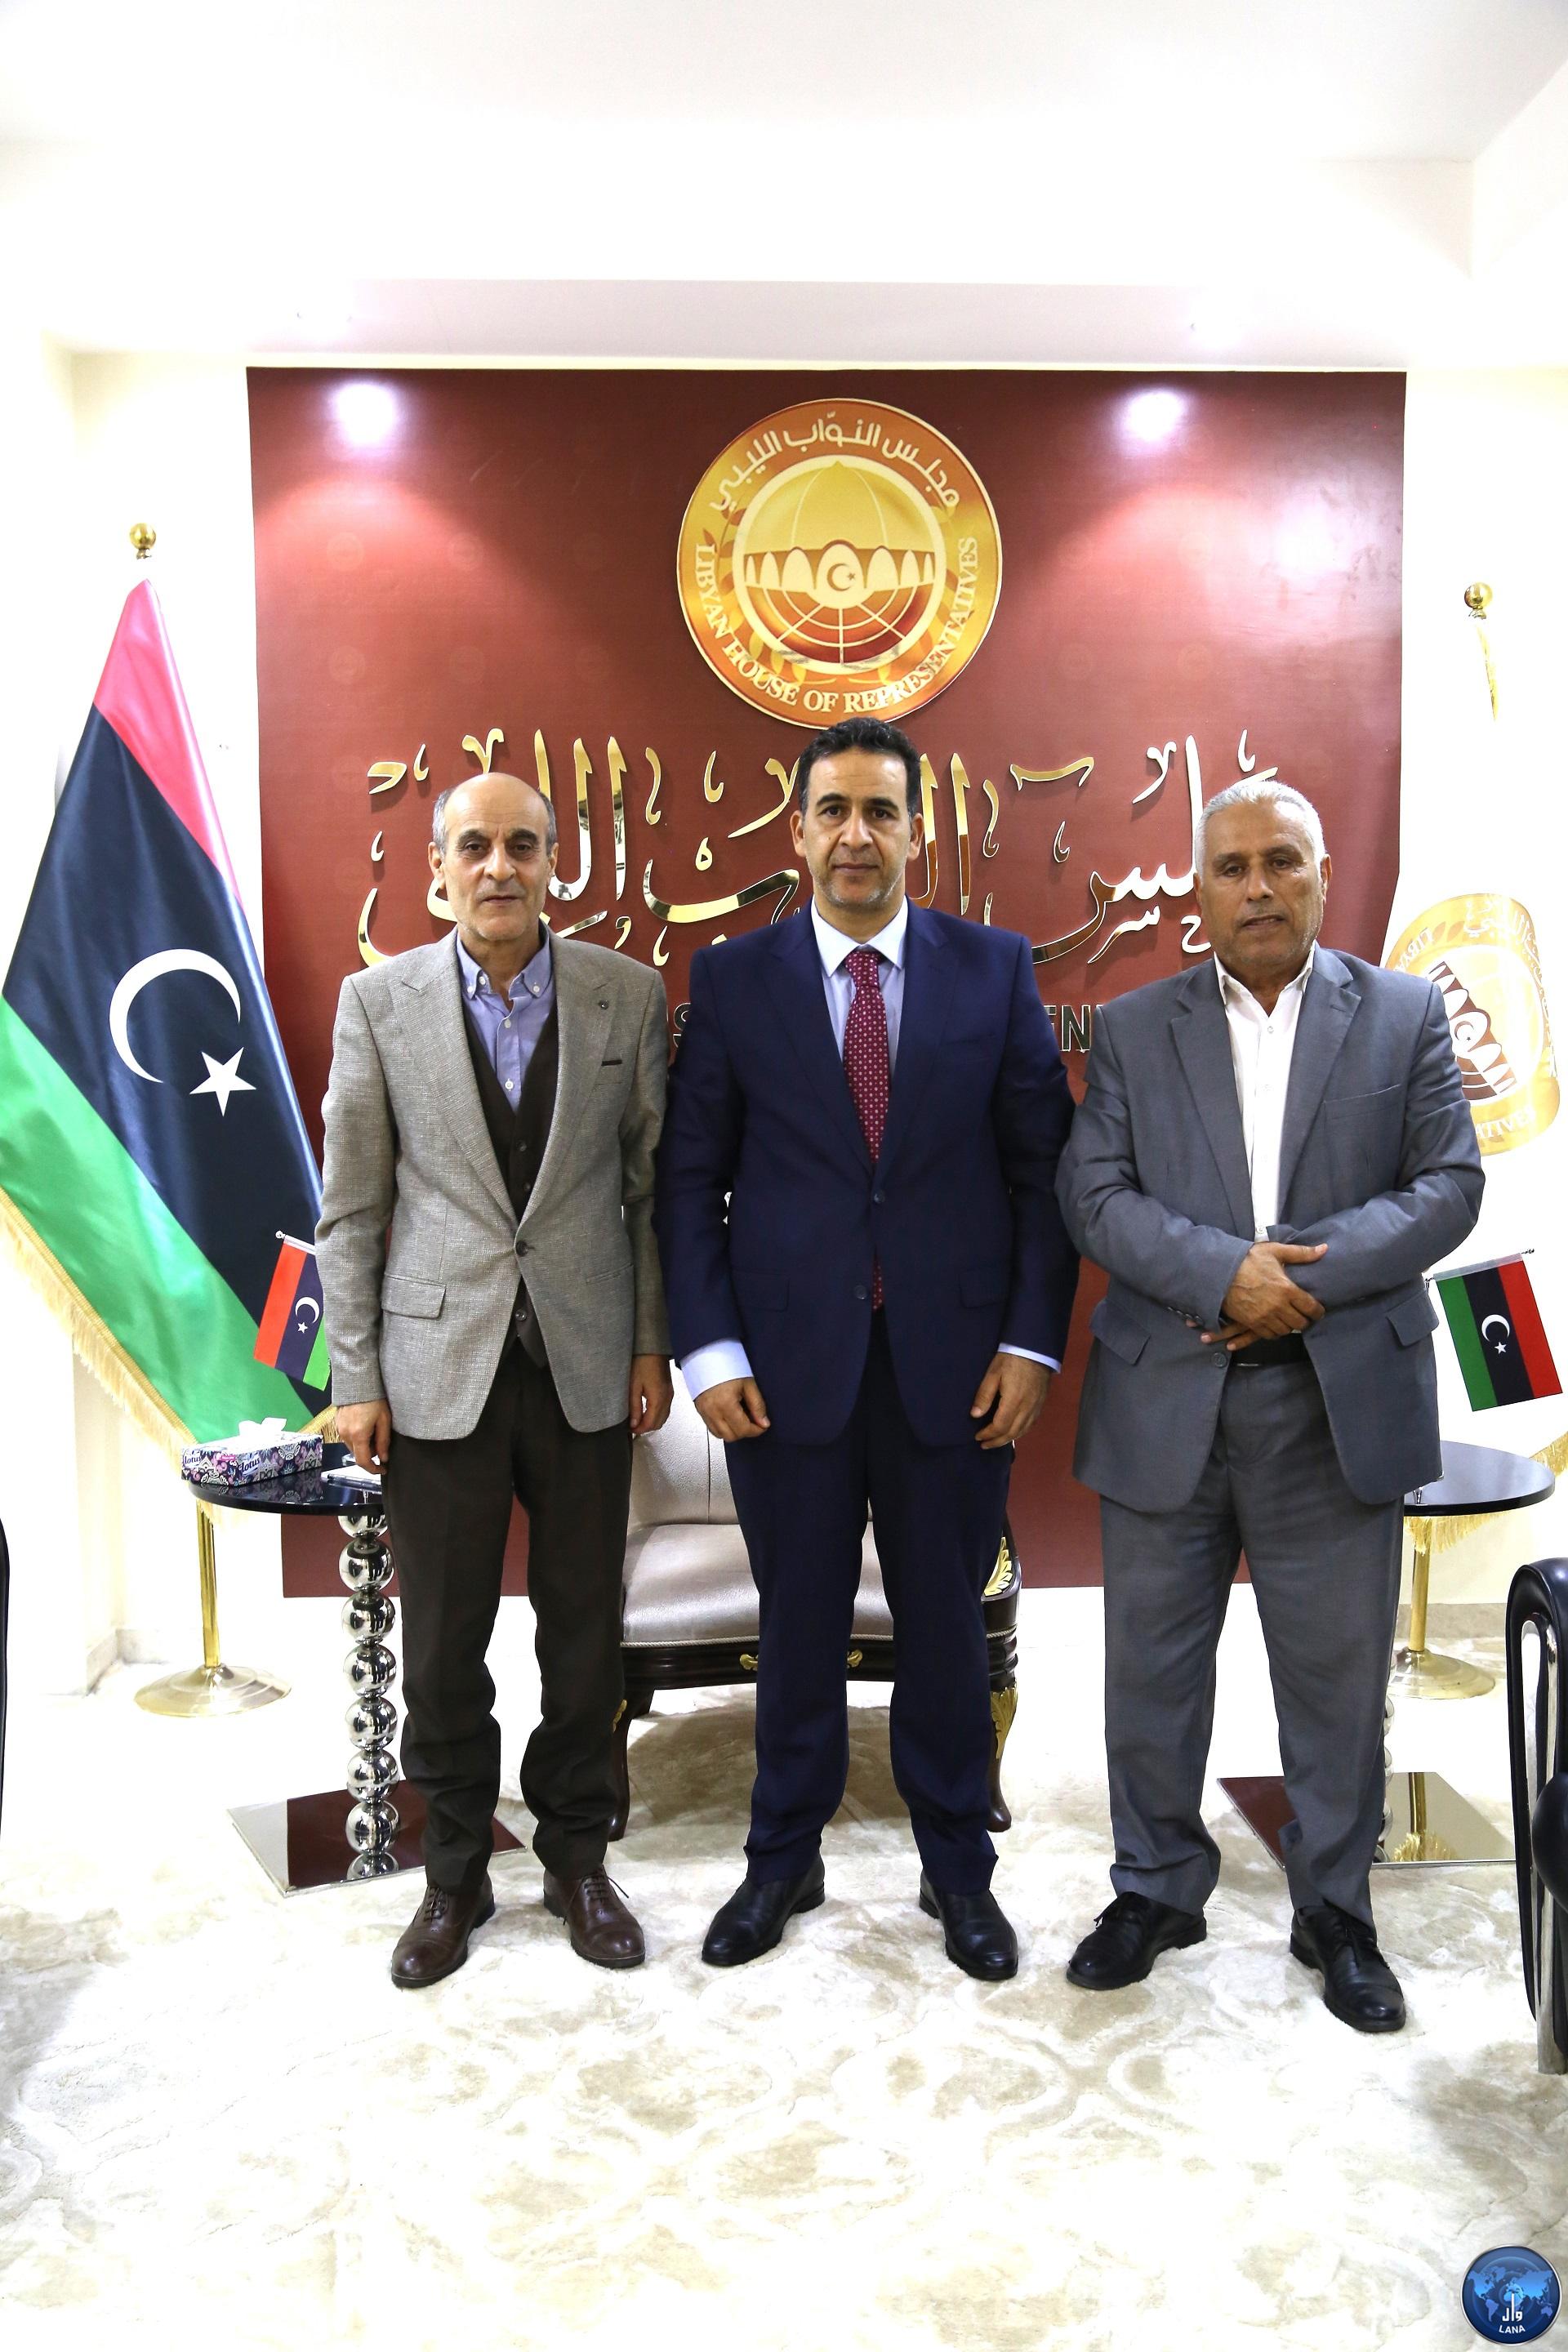 النائب الاول لرئيس مجلس النواب يلتقي برئيس مجلس ادارة وكالة الانباء الليبية .